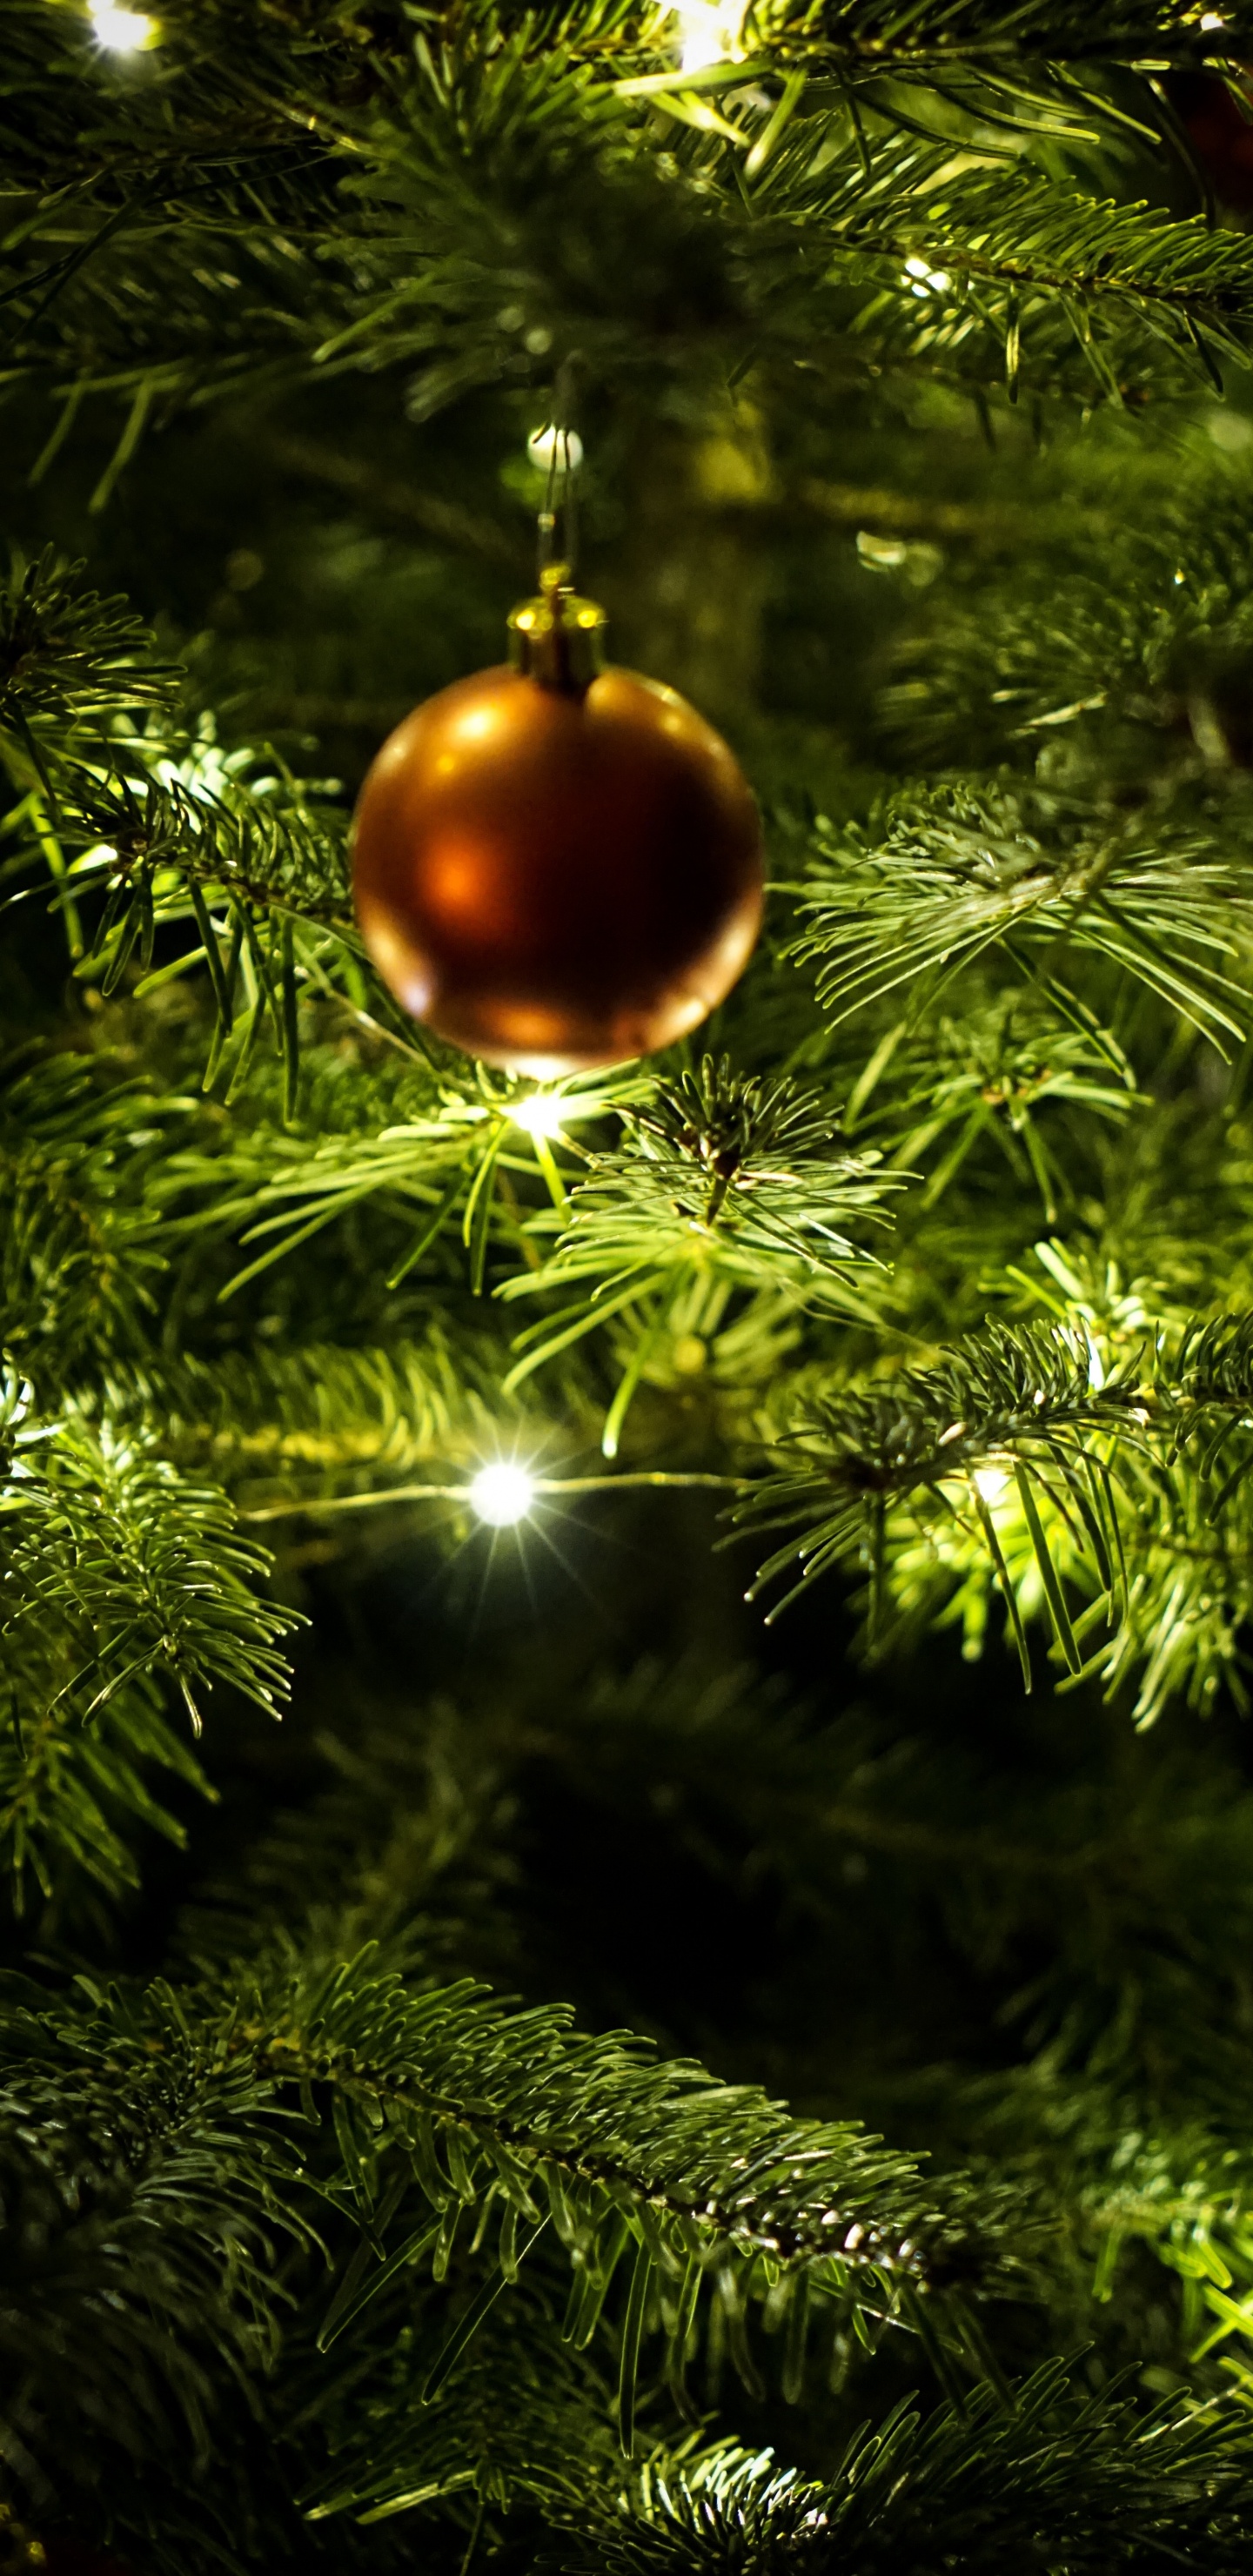 新的一年, 圣诞节那天, 圣诞节的装饰品, 圣诞装饰, 圣诞树 壁纸 1440x2960 允许